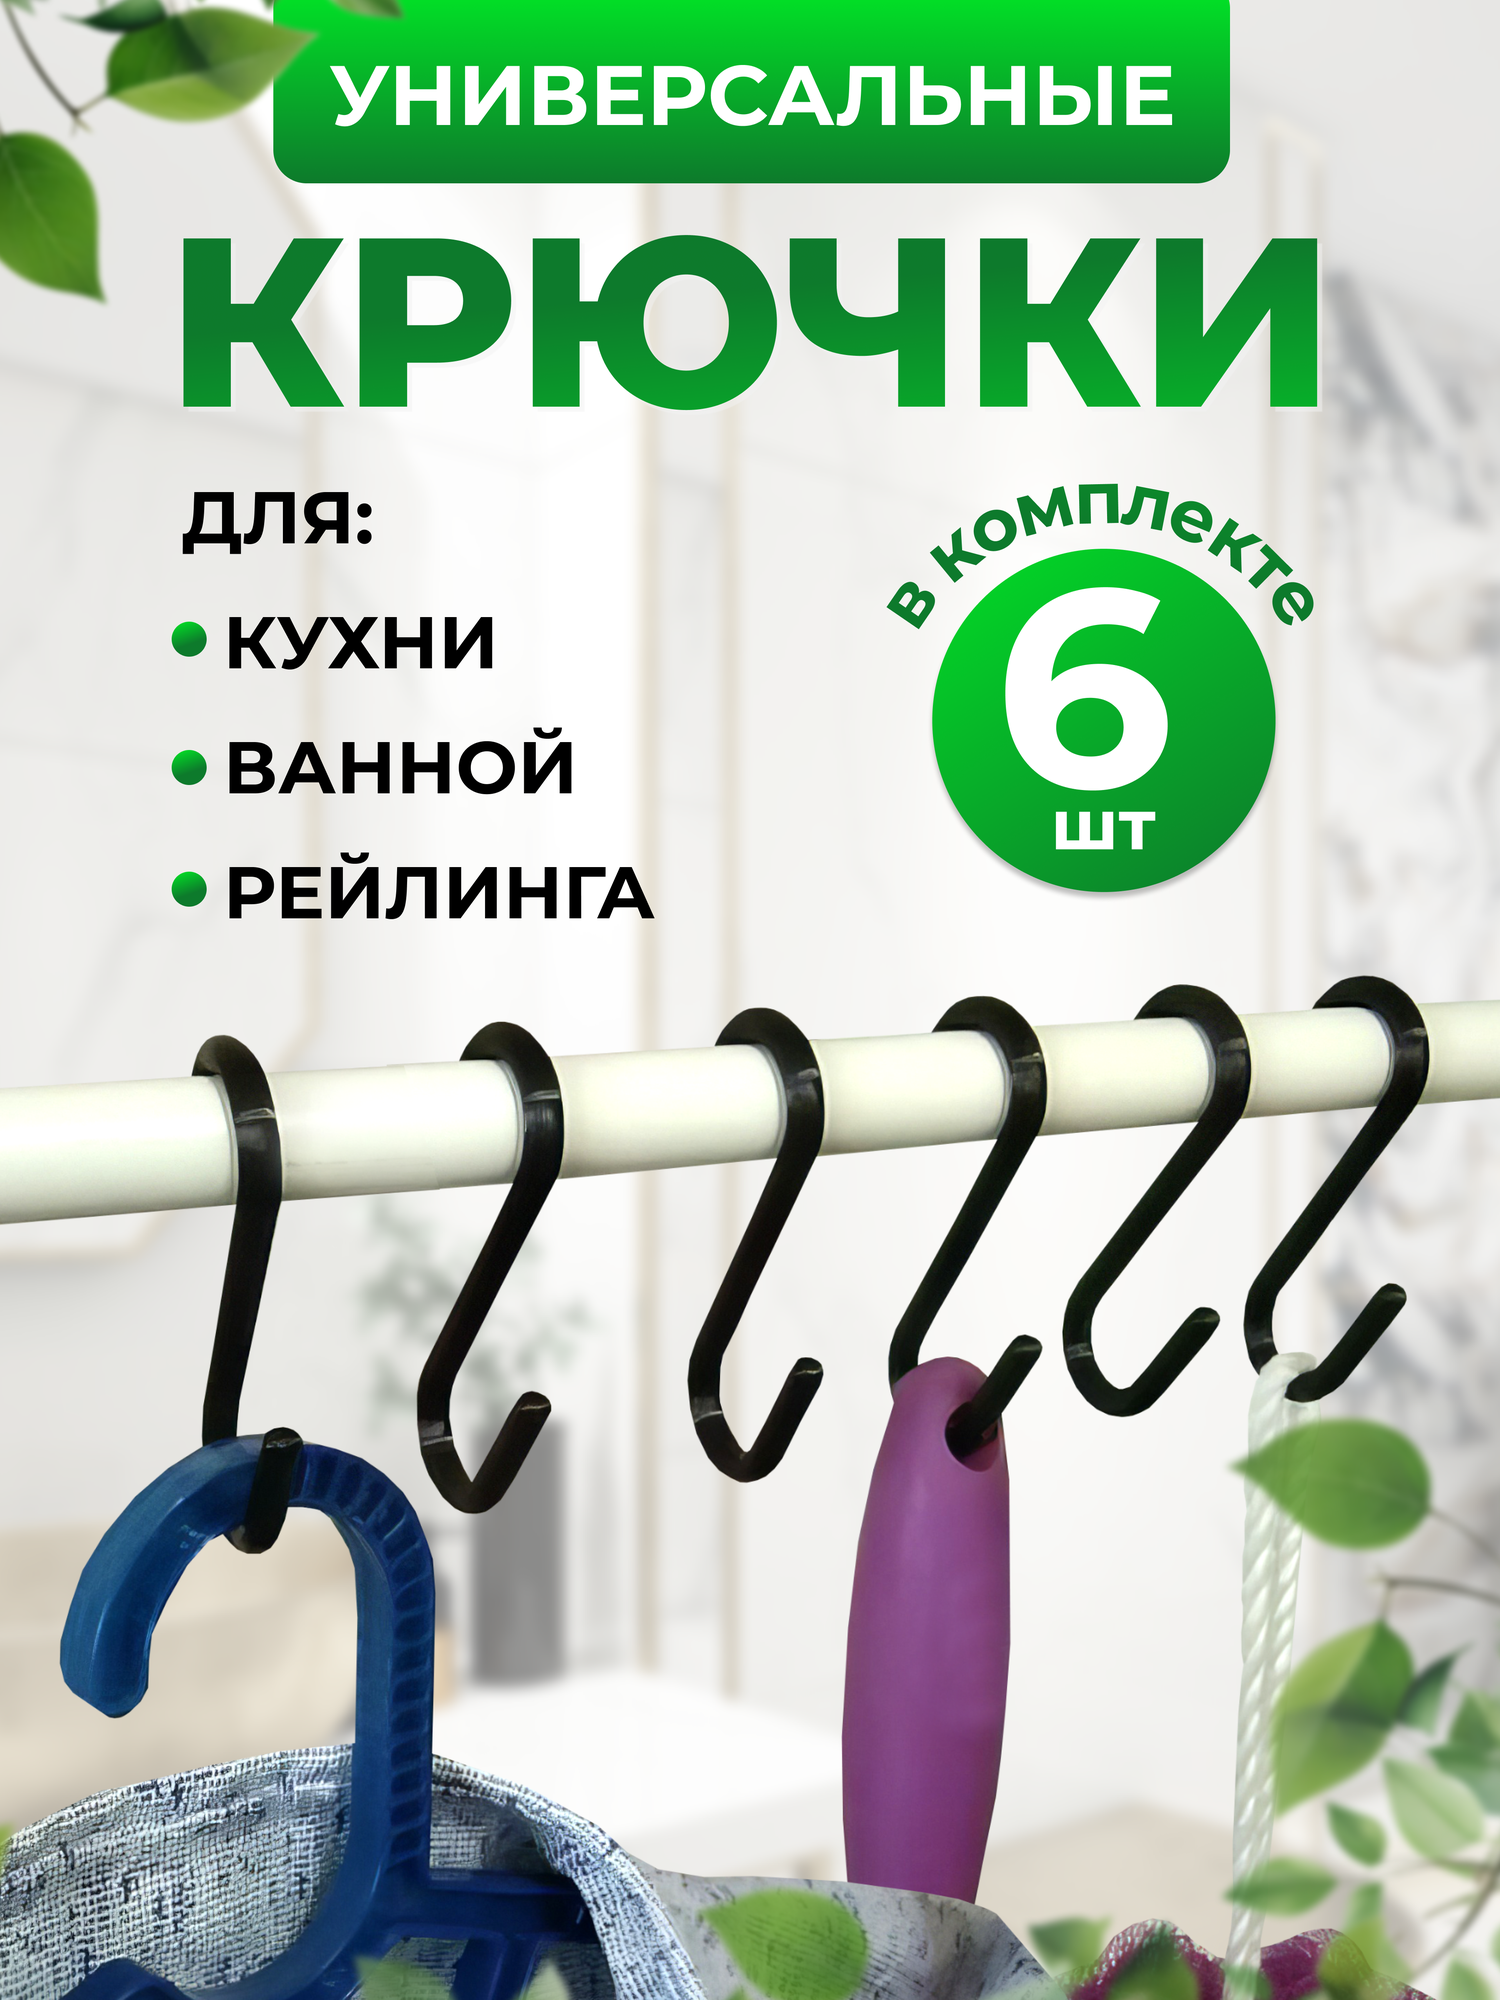 Крючки держатели для аксессуаров на рейлинги шкафа порядок в ванной и кухни 6шт